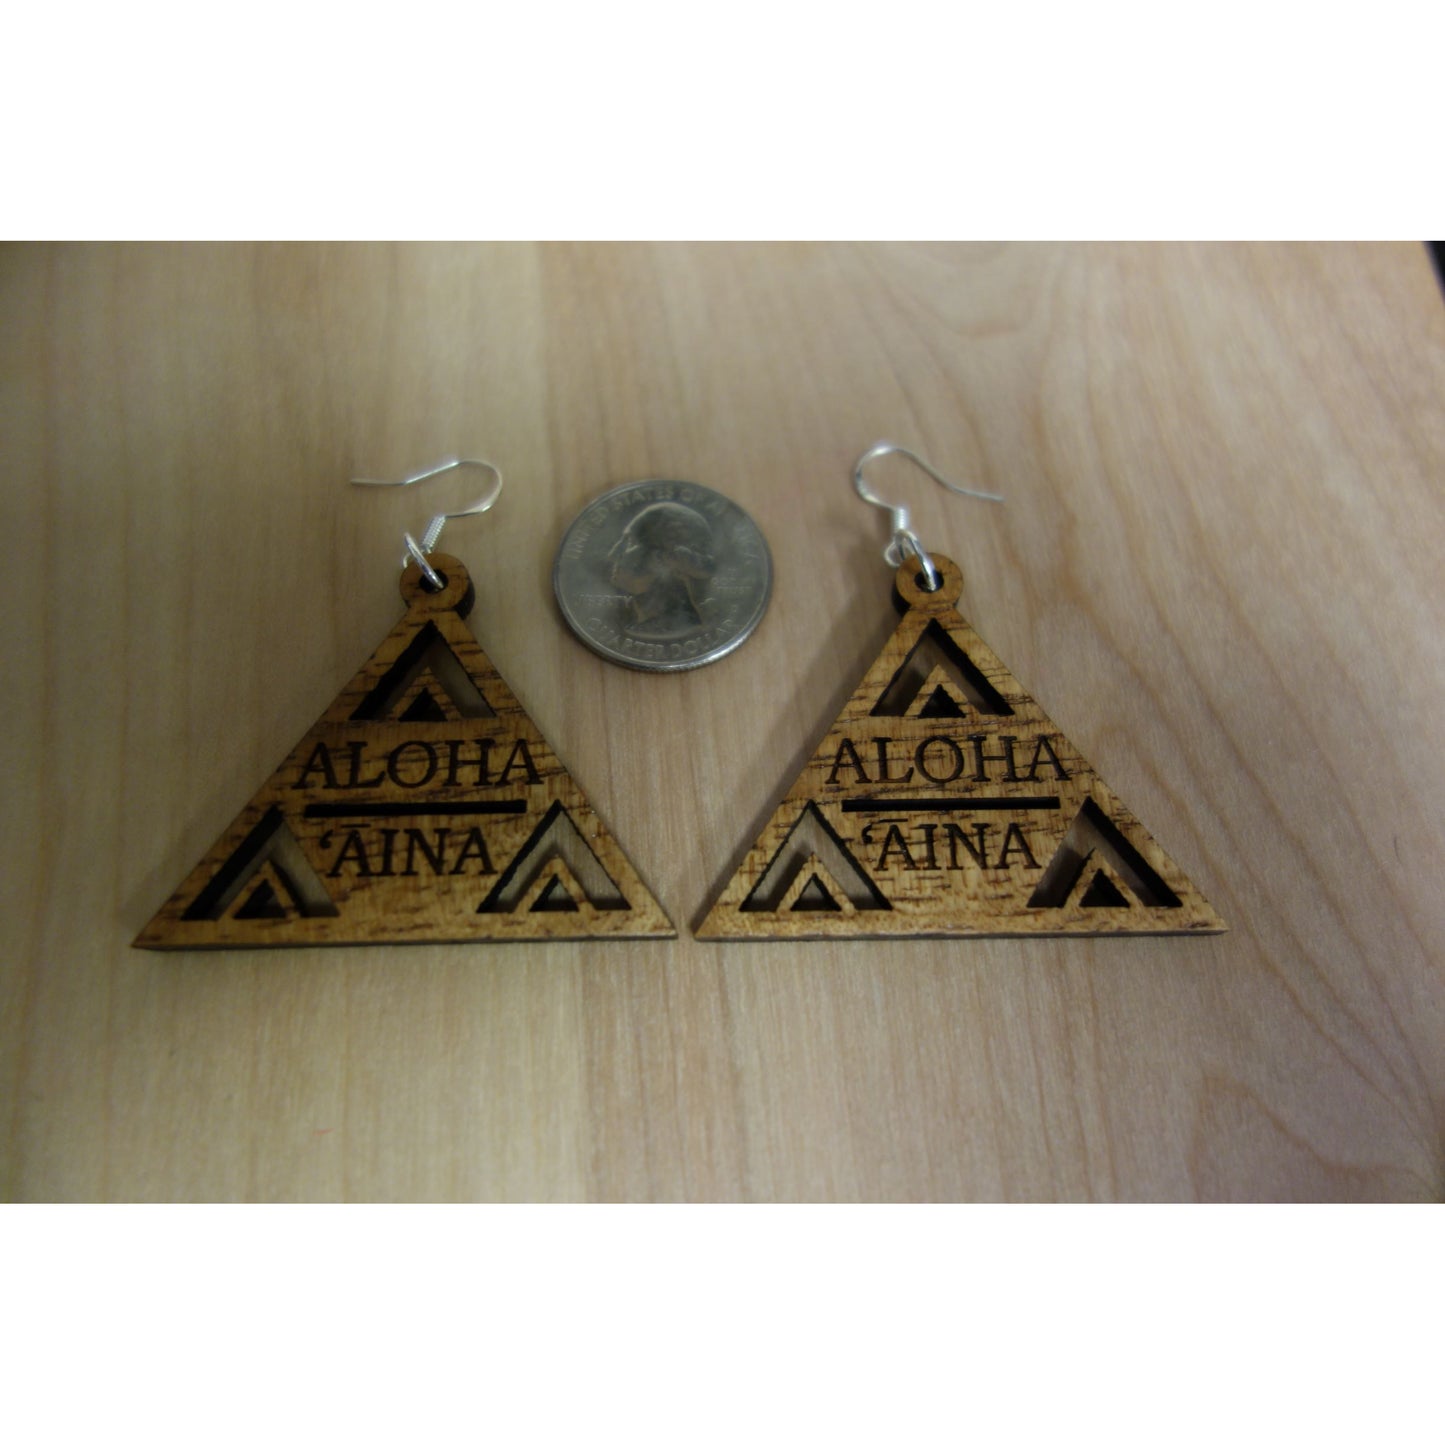 Aloha `Aina Triangle Solid Koa Wood Earrings